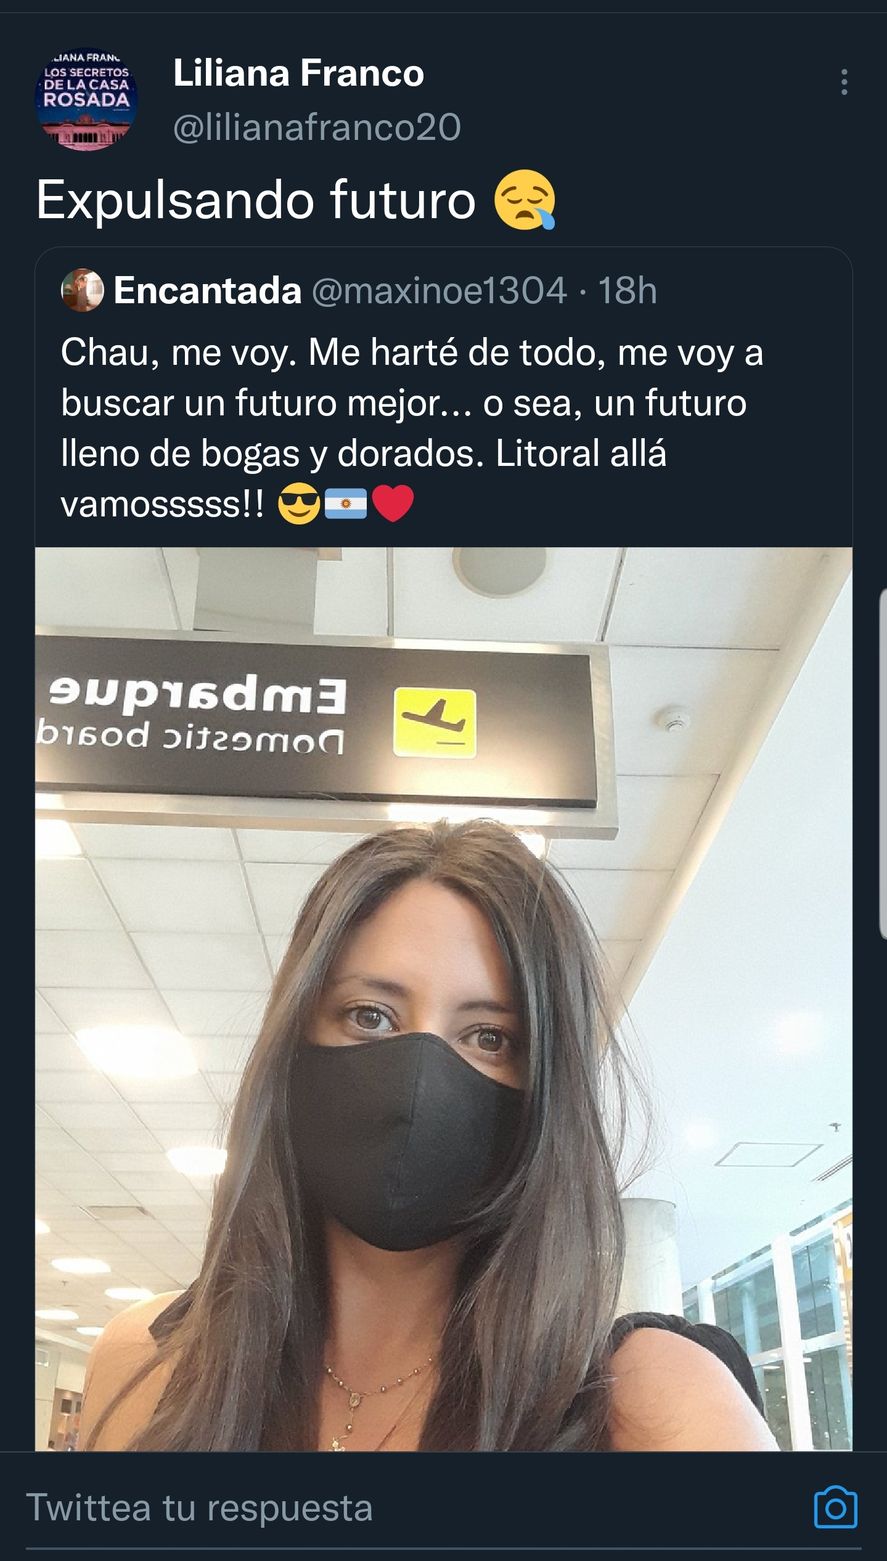 El tweet original y el retweet de la periodista Liliana Franco